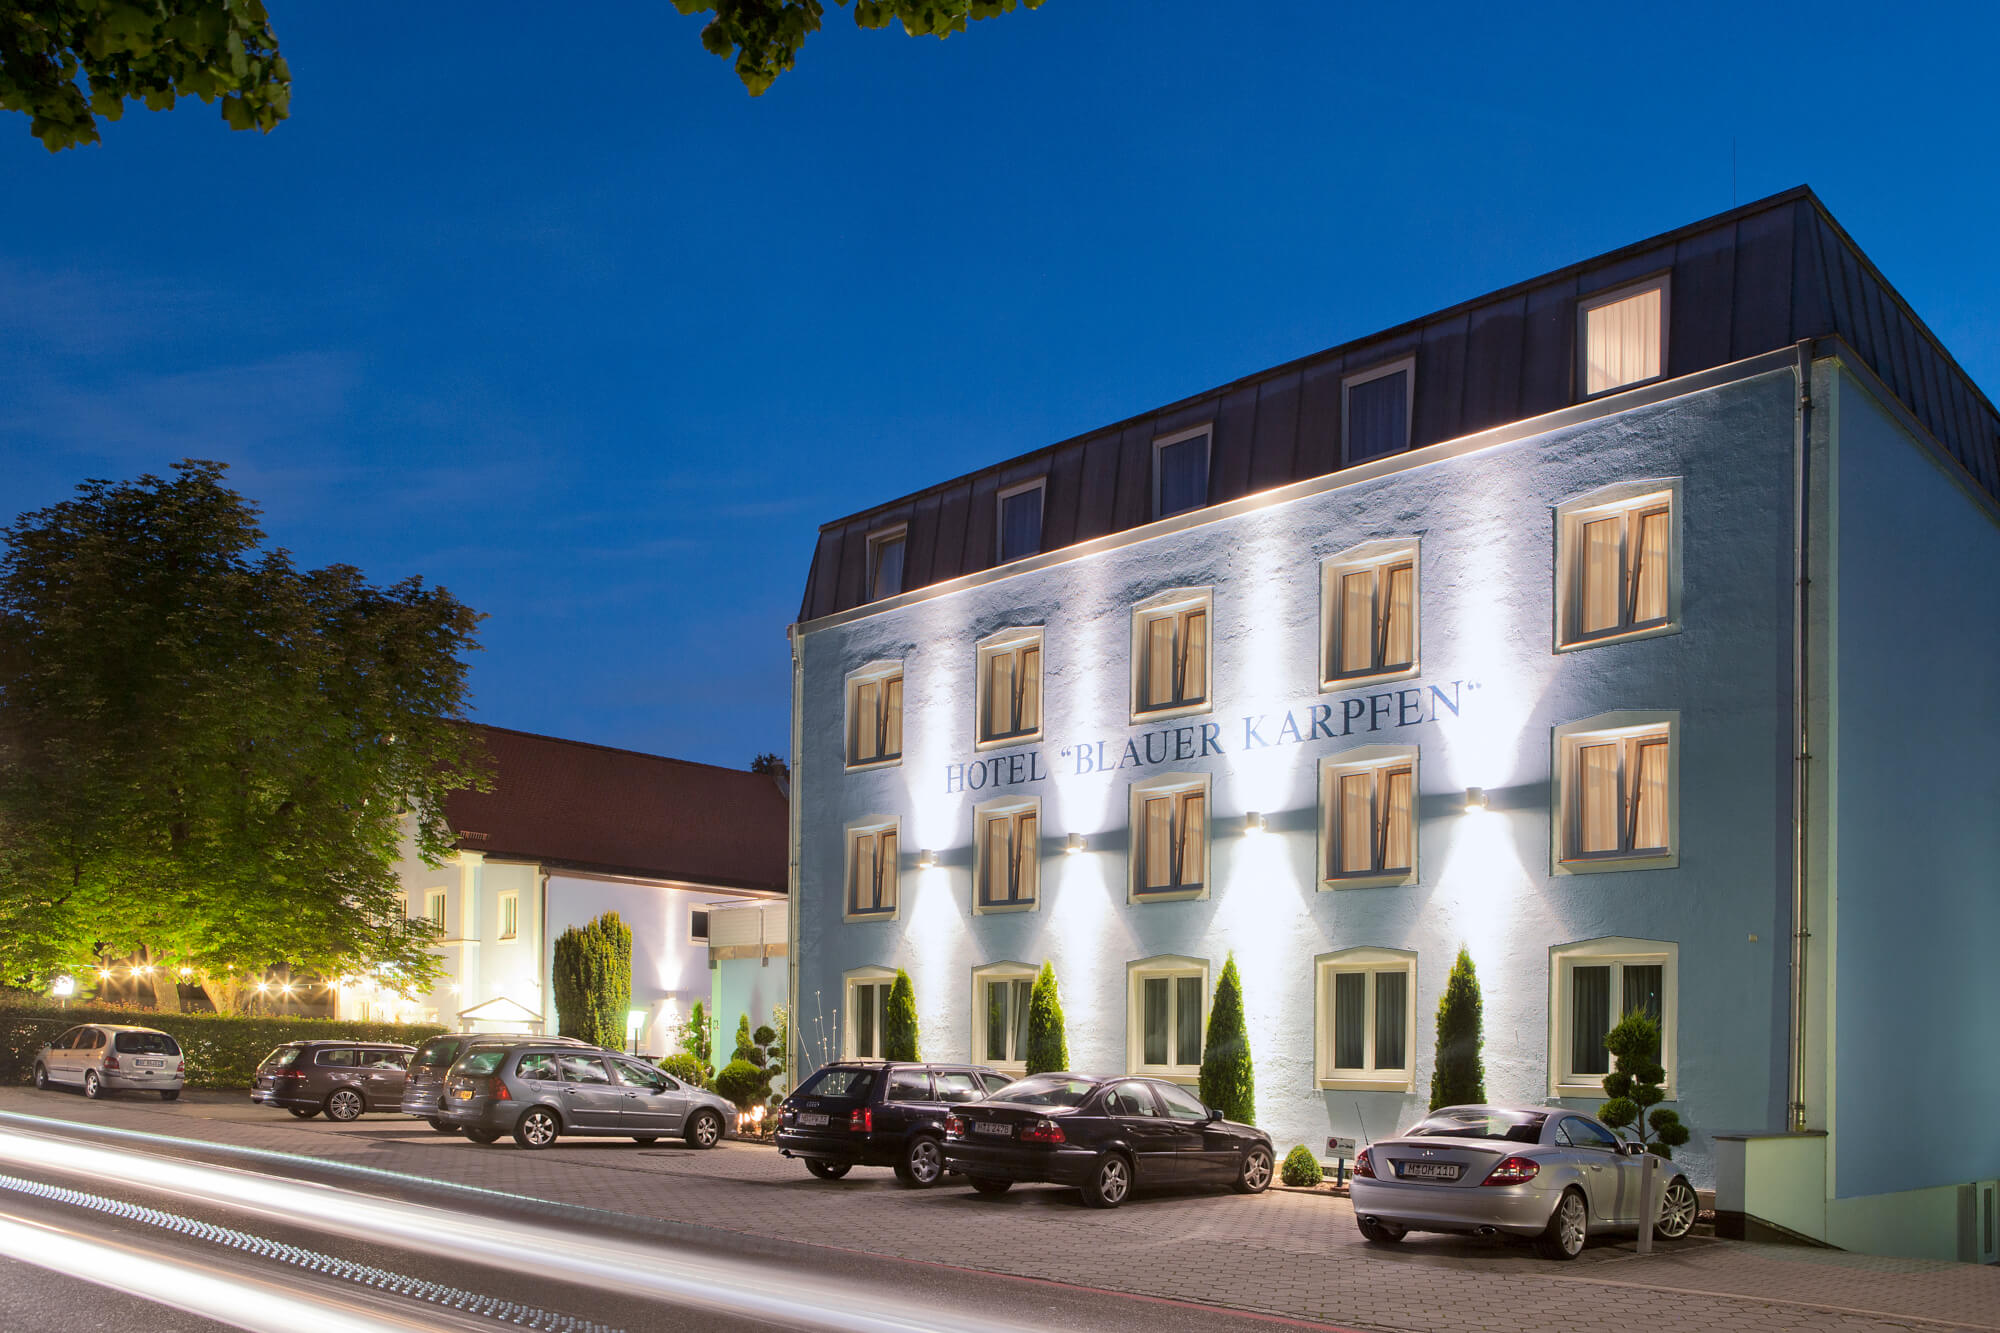 Hotel Blauer Karpfen in Unterschleissheim near Munich